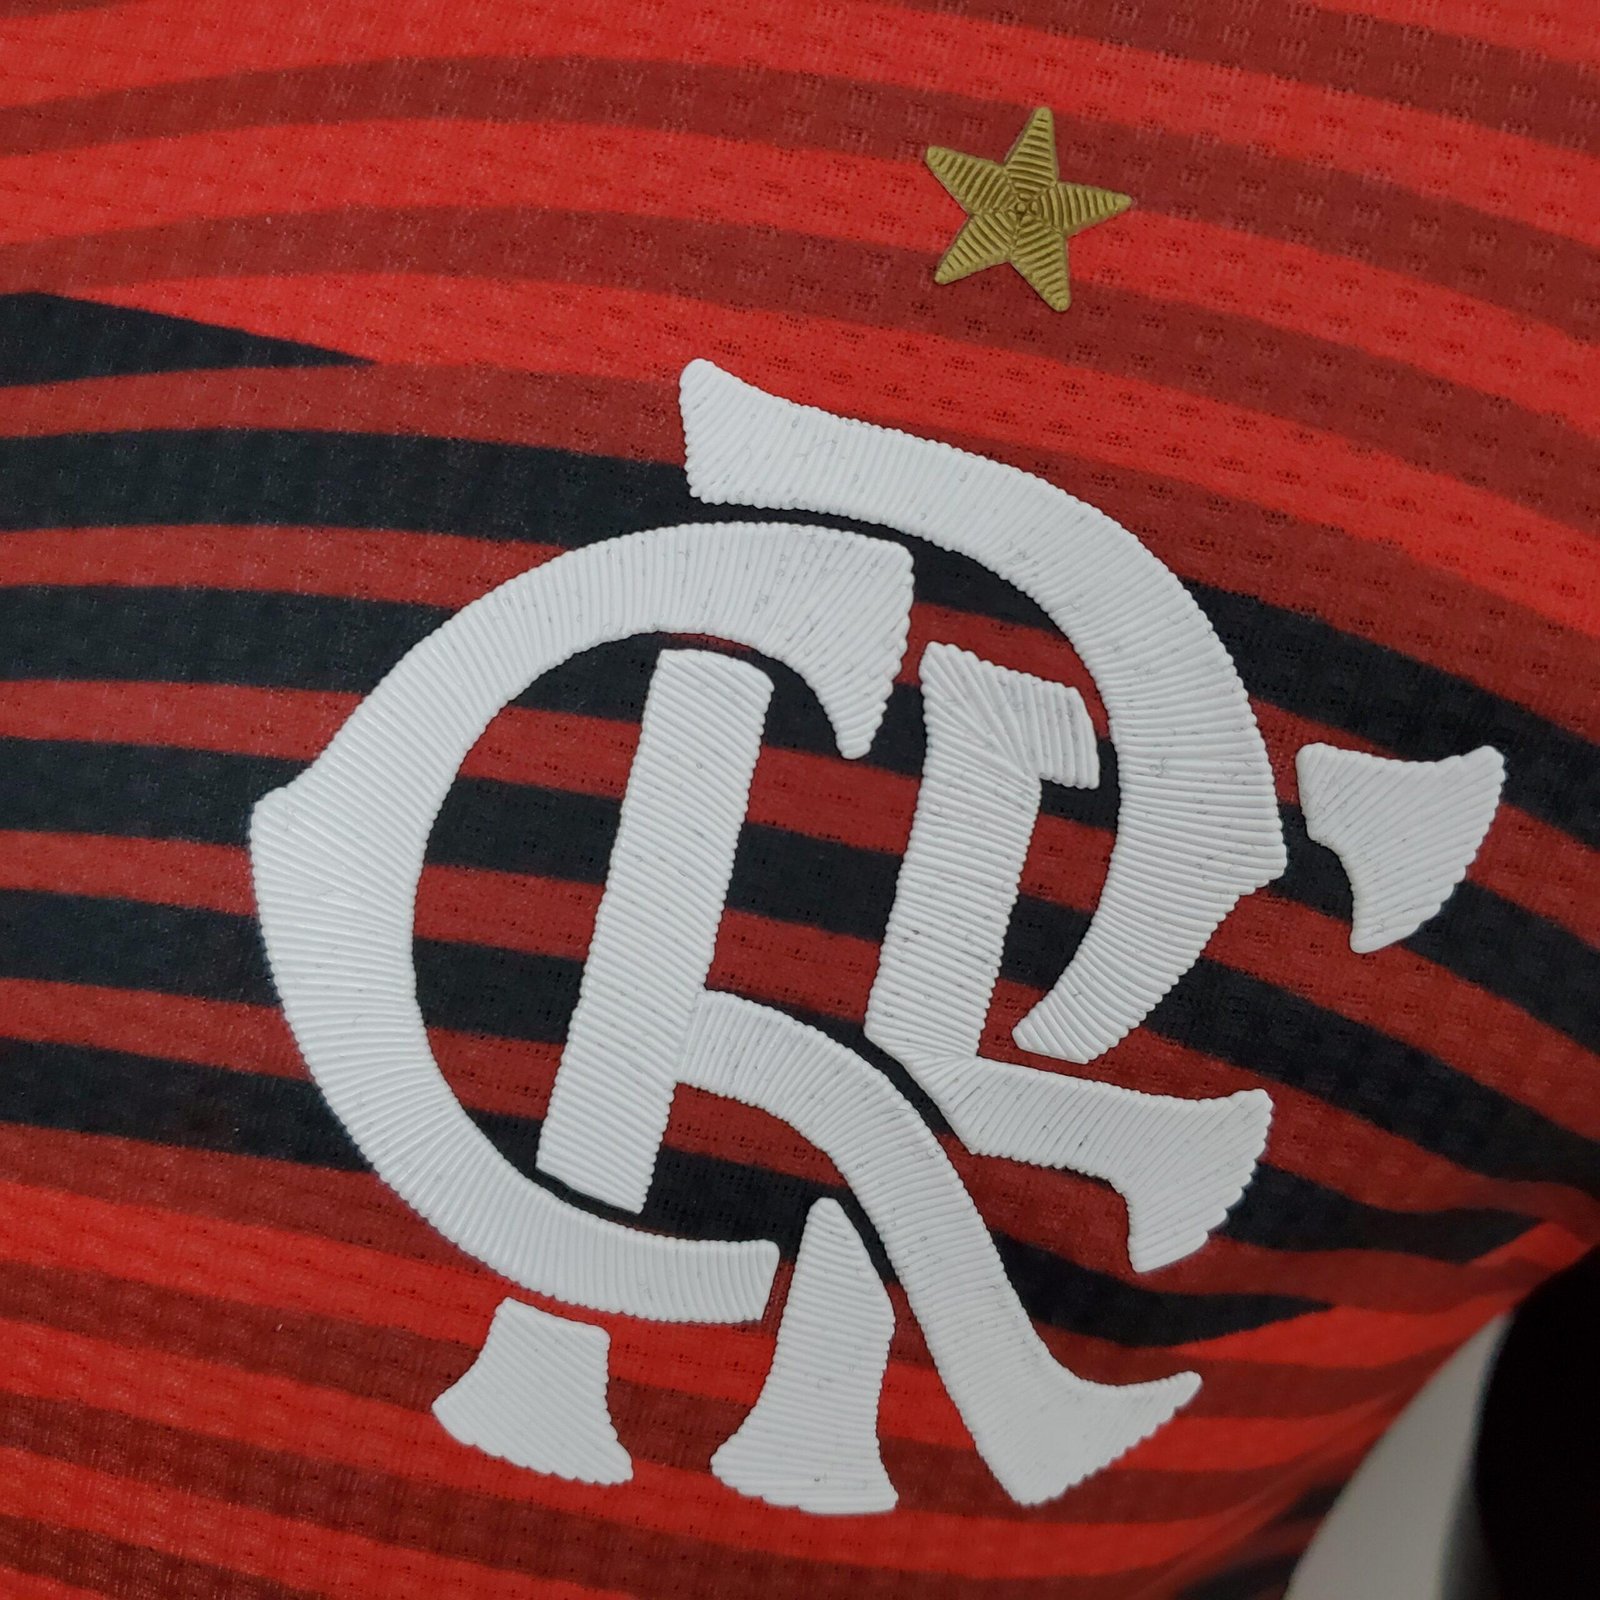 Camisa do Time Flamengo FC Oficial Listrada Rubro Negro - Braziline - Camisa  de Time - Magazine Luiza